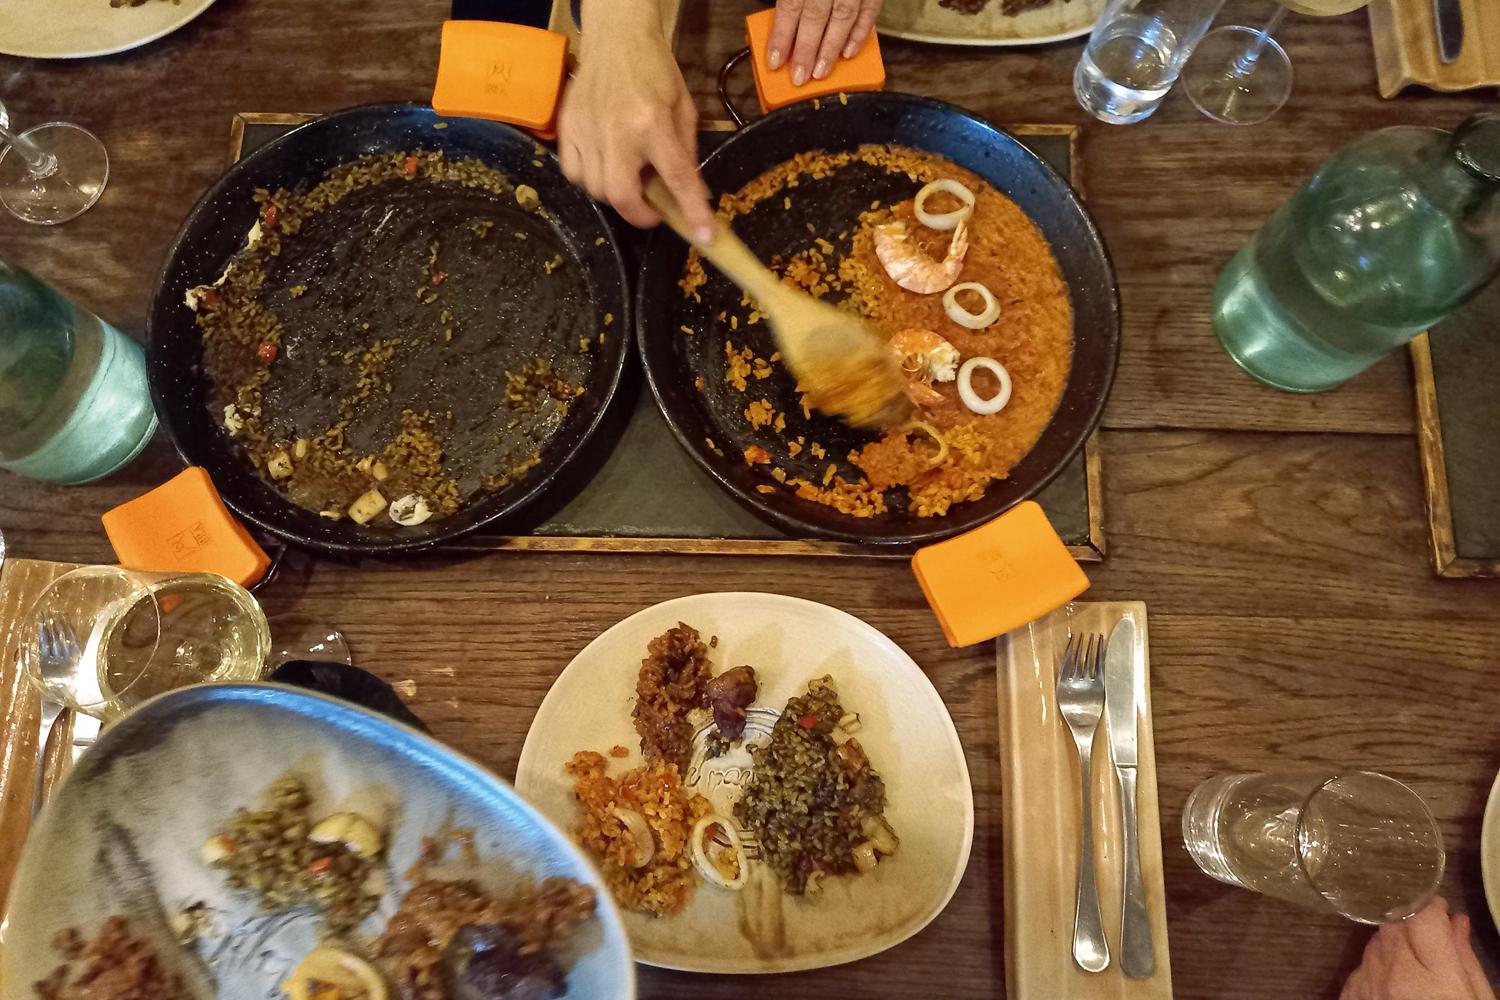 Ein gedeckter Tisch aus der Vogelperspektive, mittig sind zwei Pfannen platziert, eine ausgekratzte und eine noch halb gefüllt mit Paella